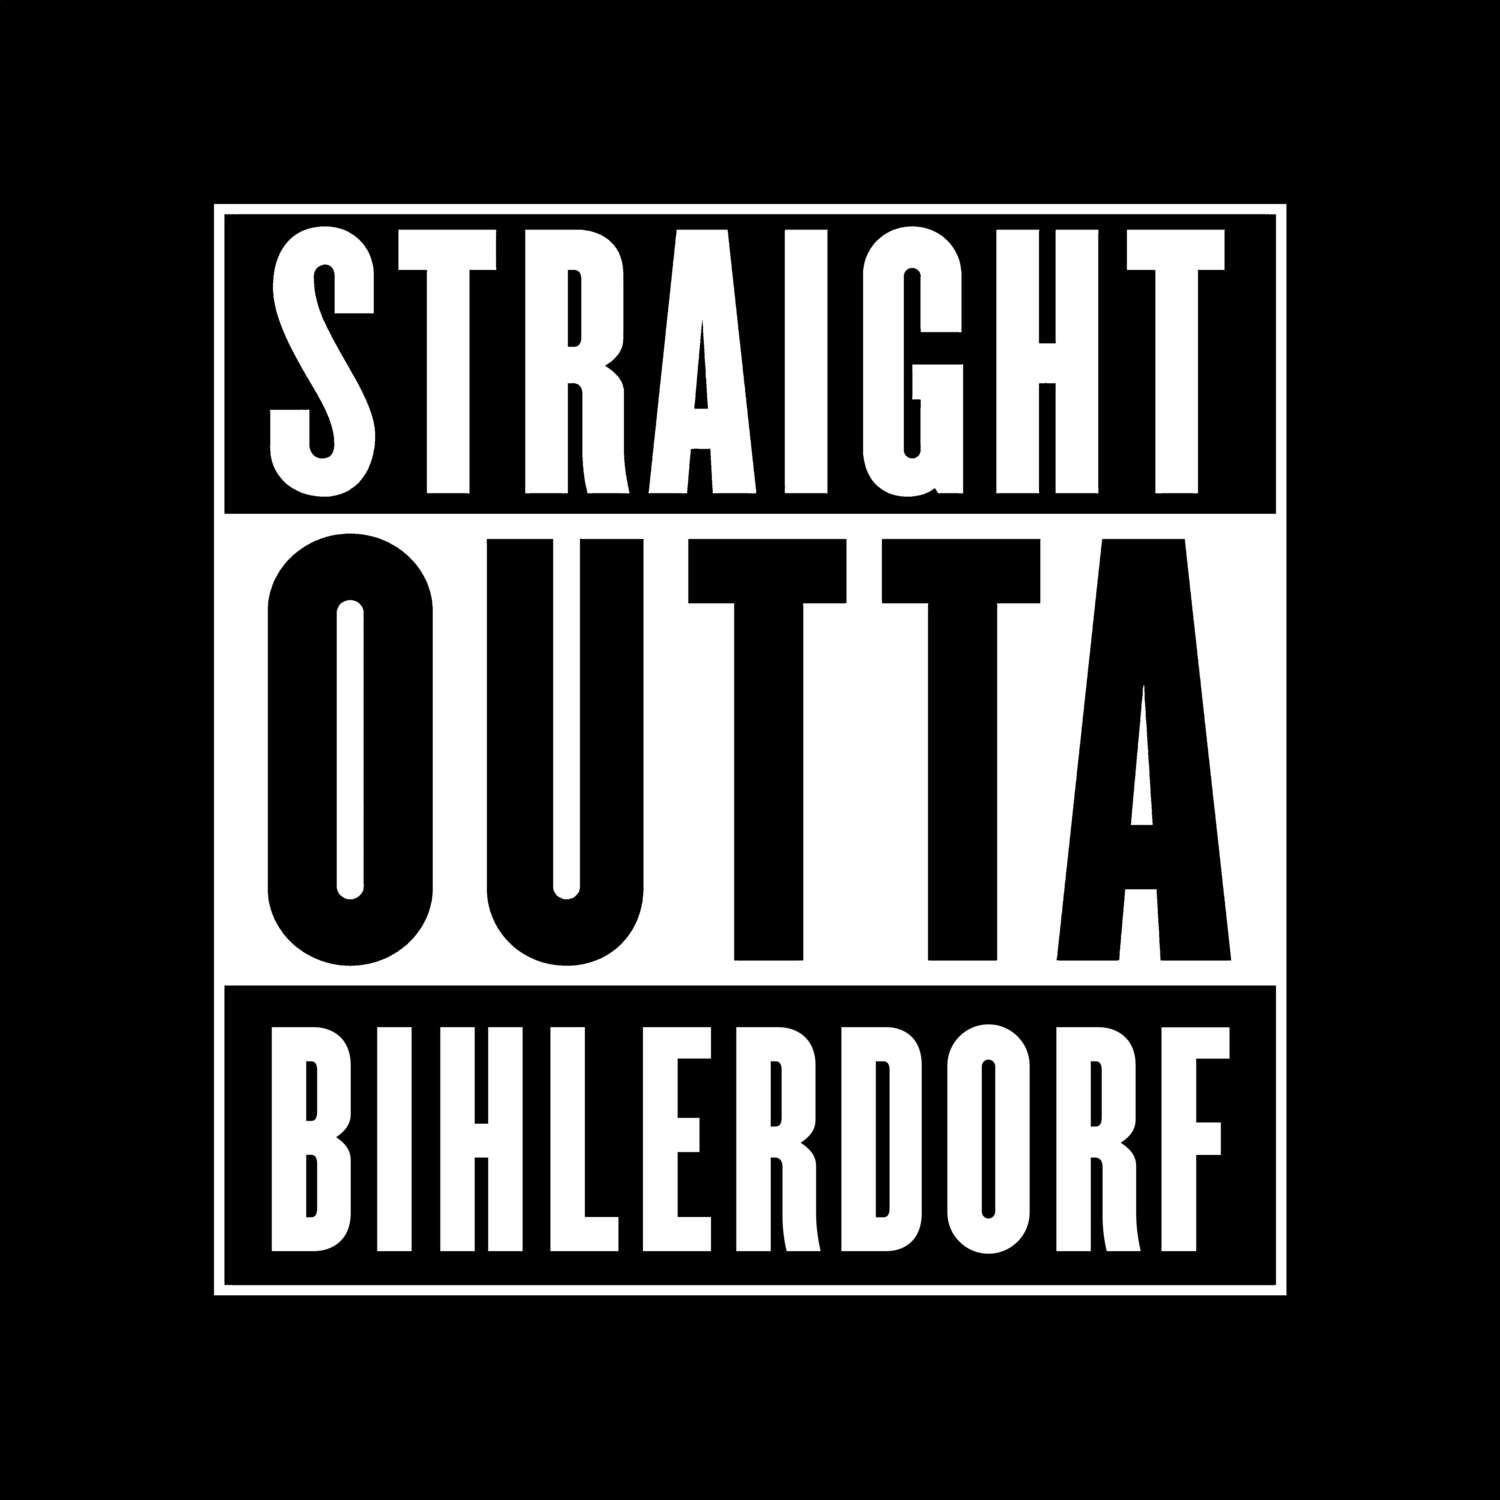 Bihlerdorf T-Shirt »Straight Outta«